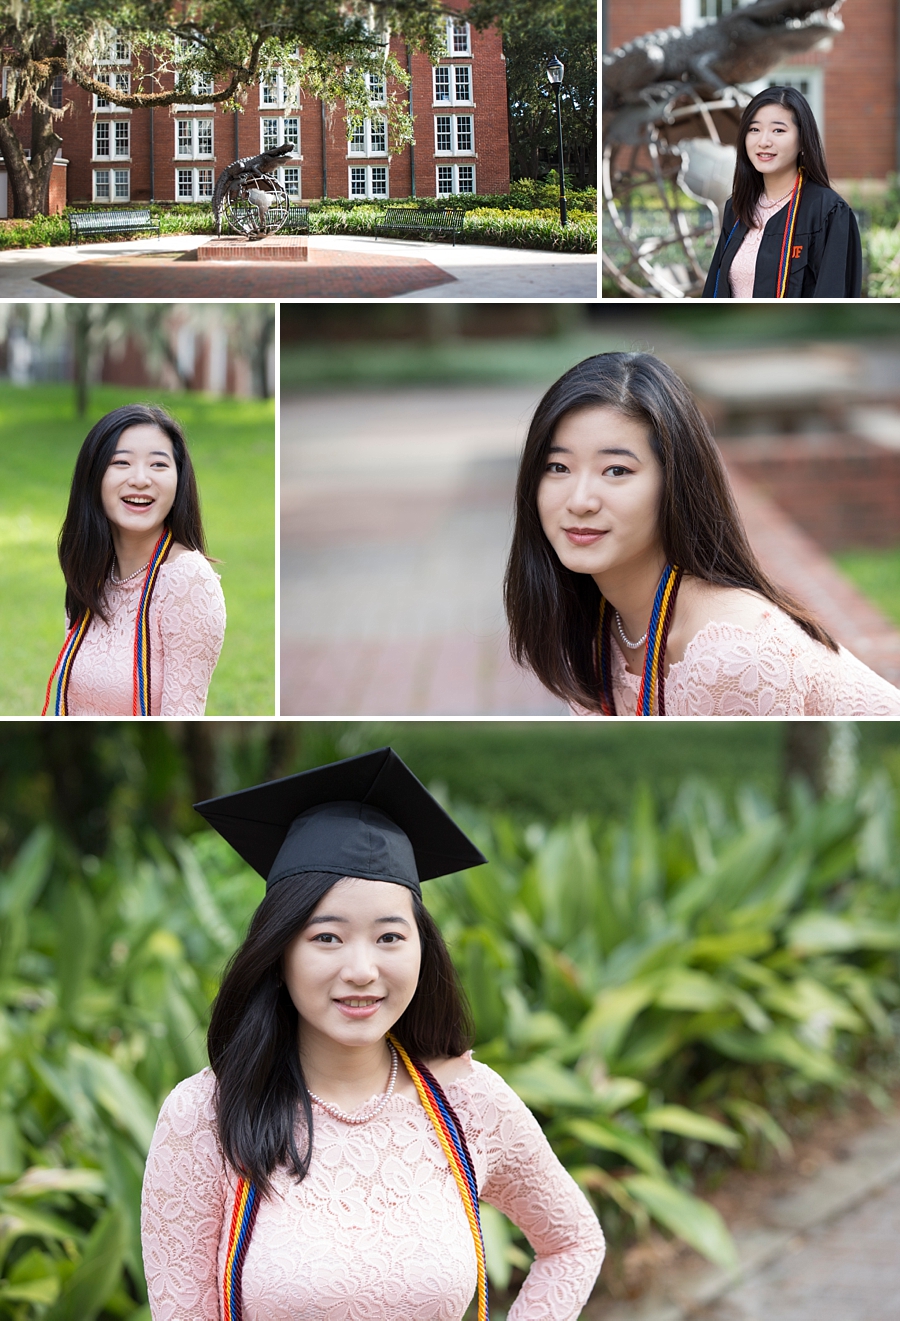 UF senior graduation photos on campus